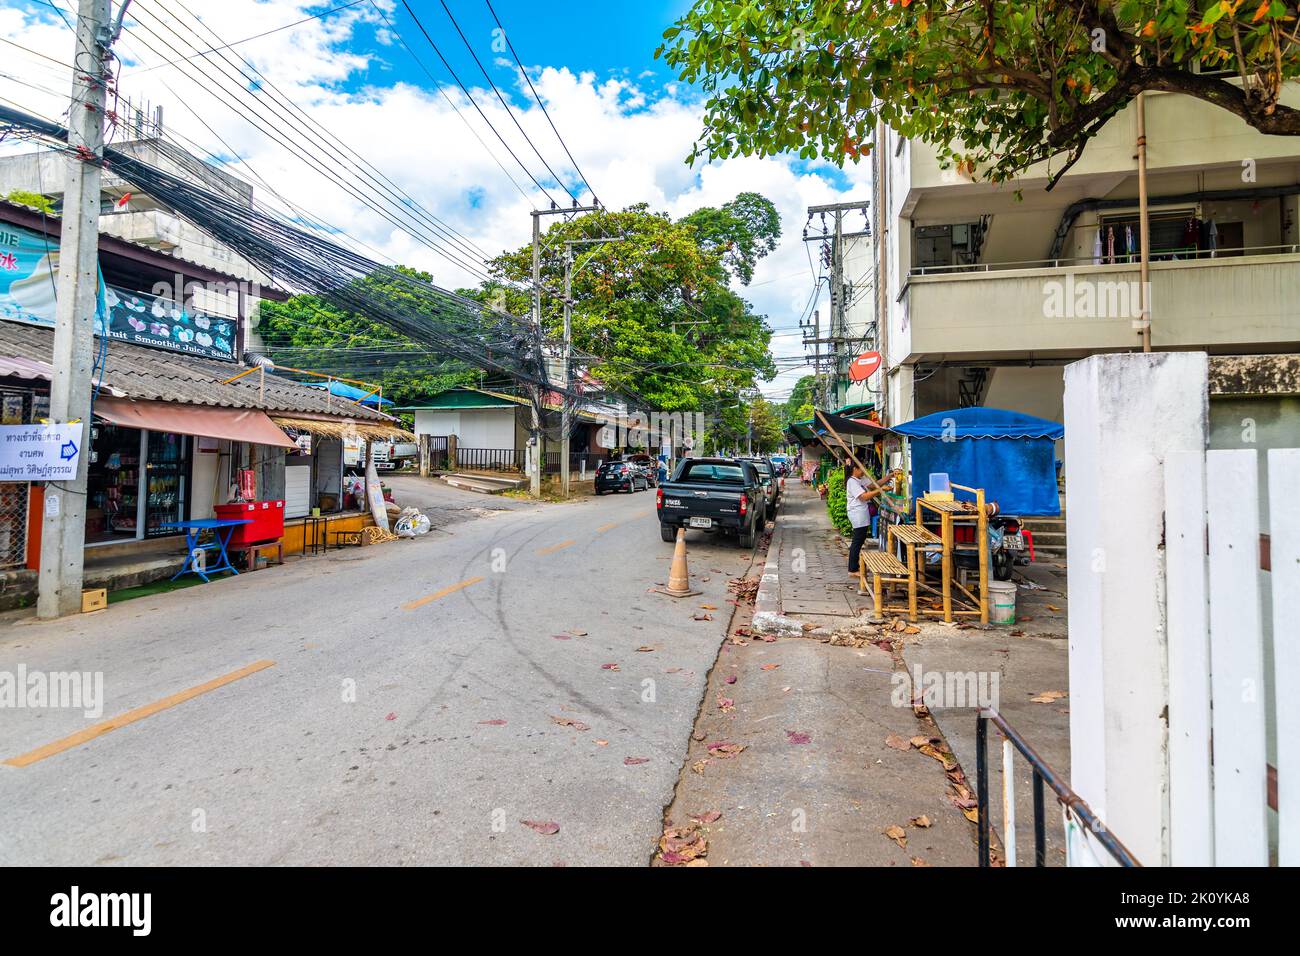 CHIANG MAI, THAILAND - 4.11.2019: Straße in der Stadt Chiang Mai. Blick auf die Straße mit Autos, Holzhäusern, Bäumen. Schmale Straße in der Mitte. Stockfoto